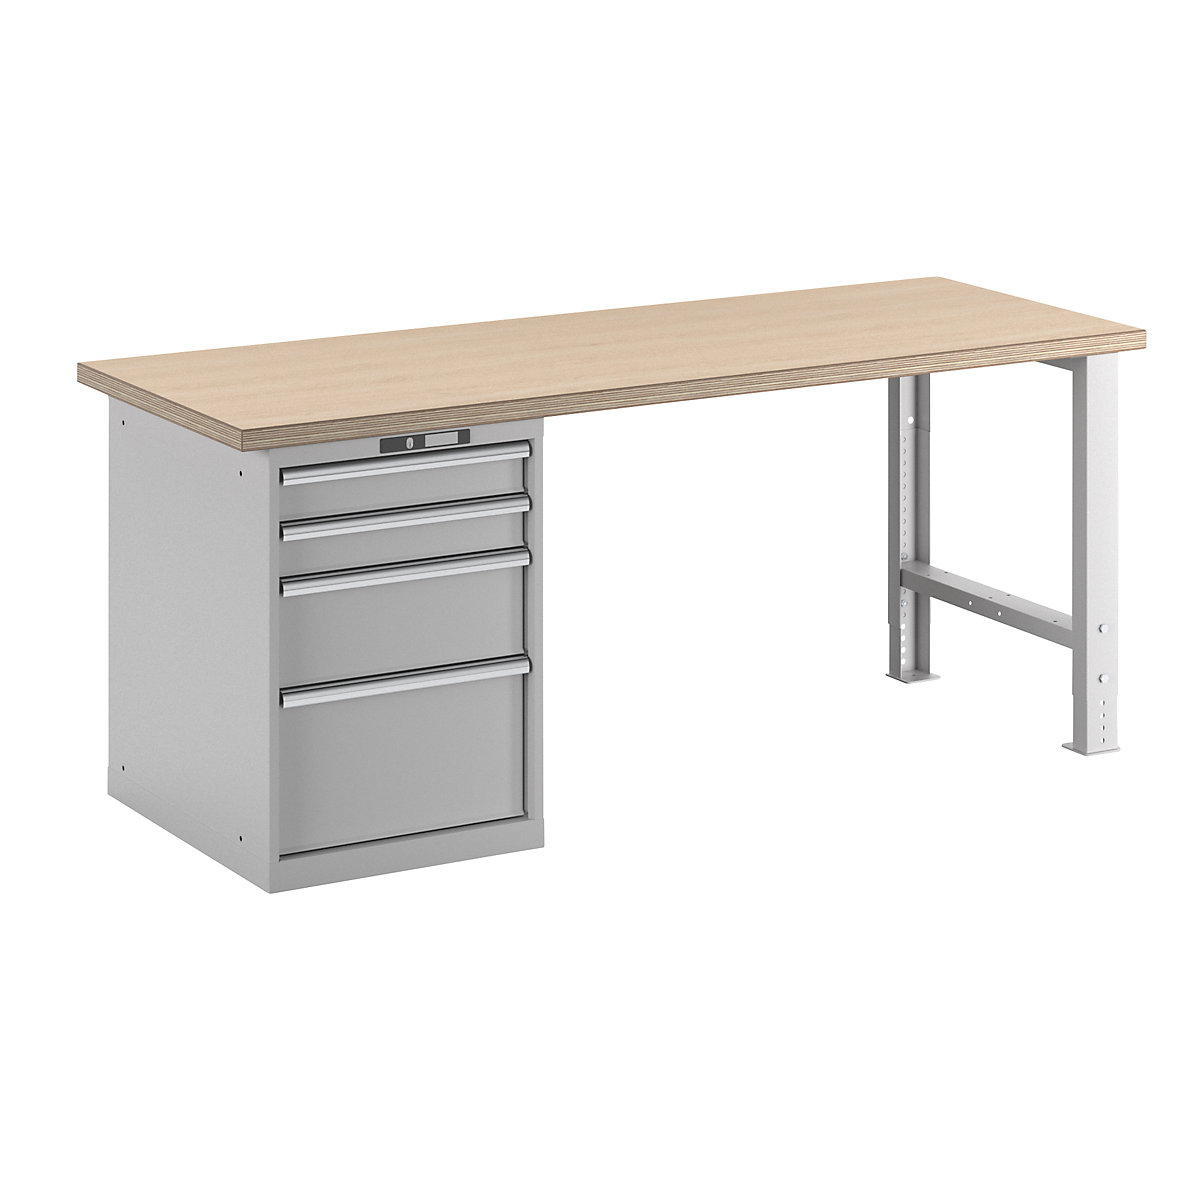 Dílenský stůl ve stavebnicovém systému – LISTA, výška 840 mm, podstavná skříňka, 4 zásuvky, světle šedá, šířka stolu 2000 mm-11